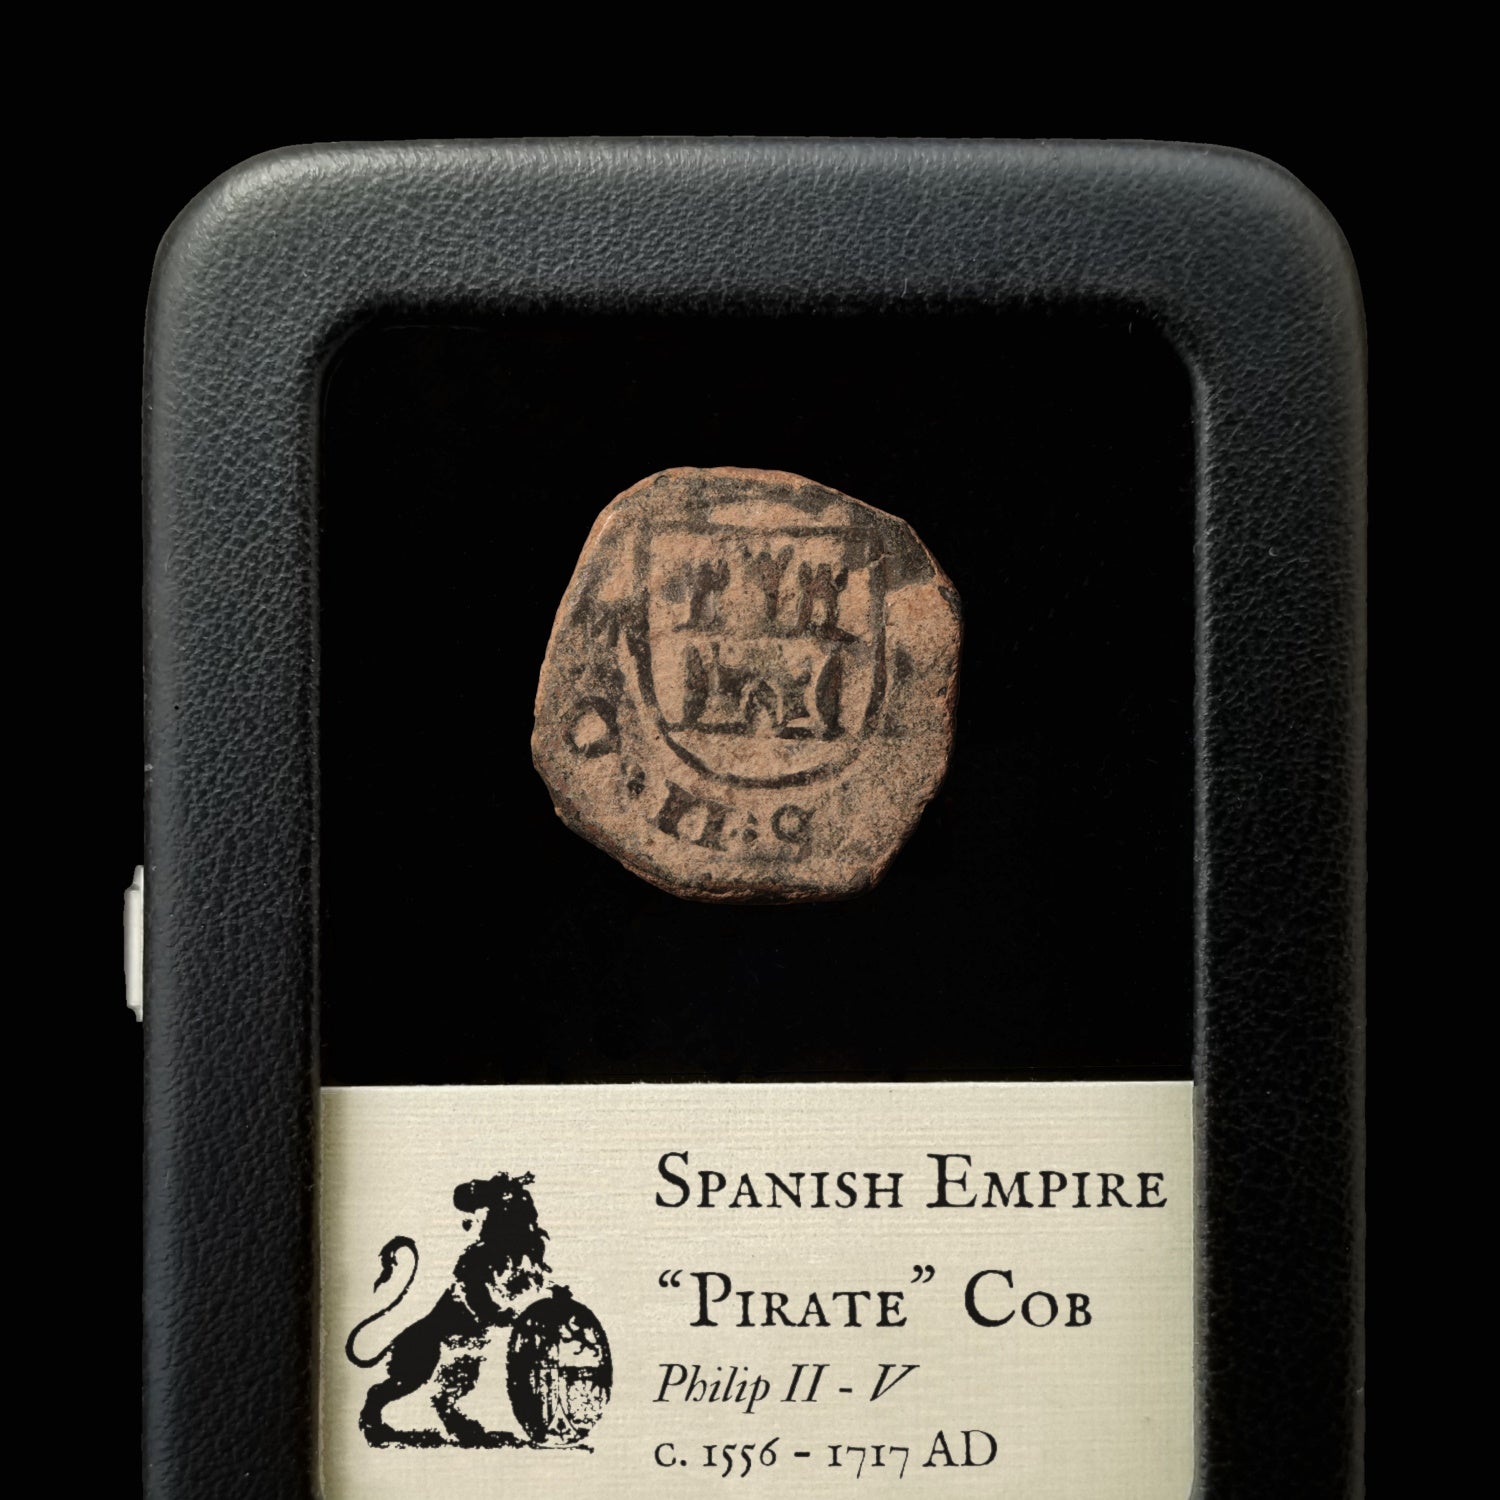 Spain, Copper "Pirate" Cob - c. 1556 to 1717 - Spanish Empire